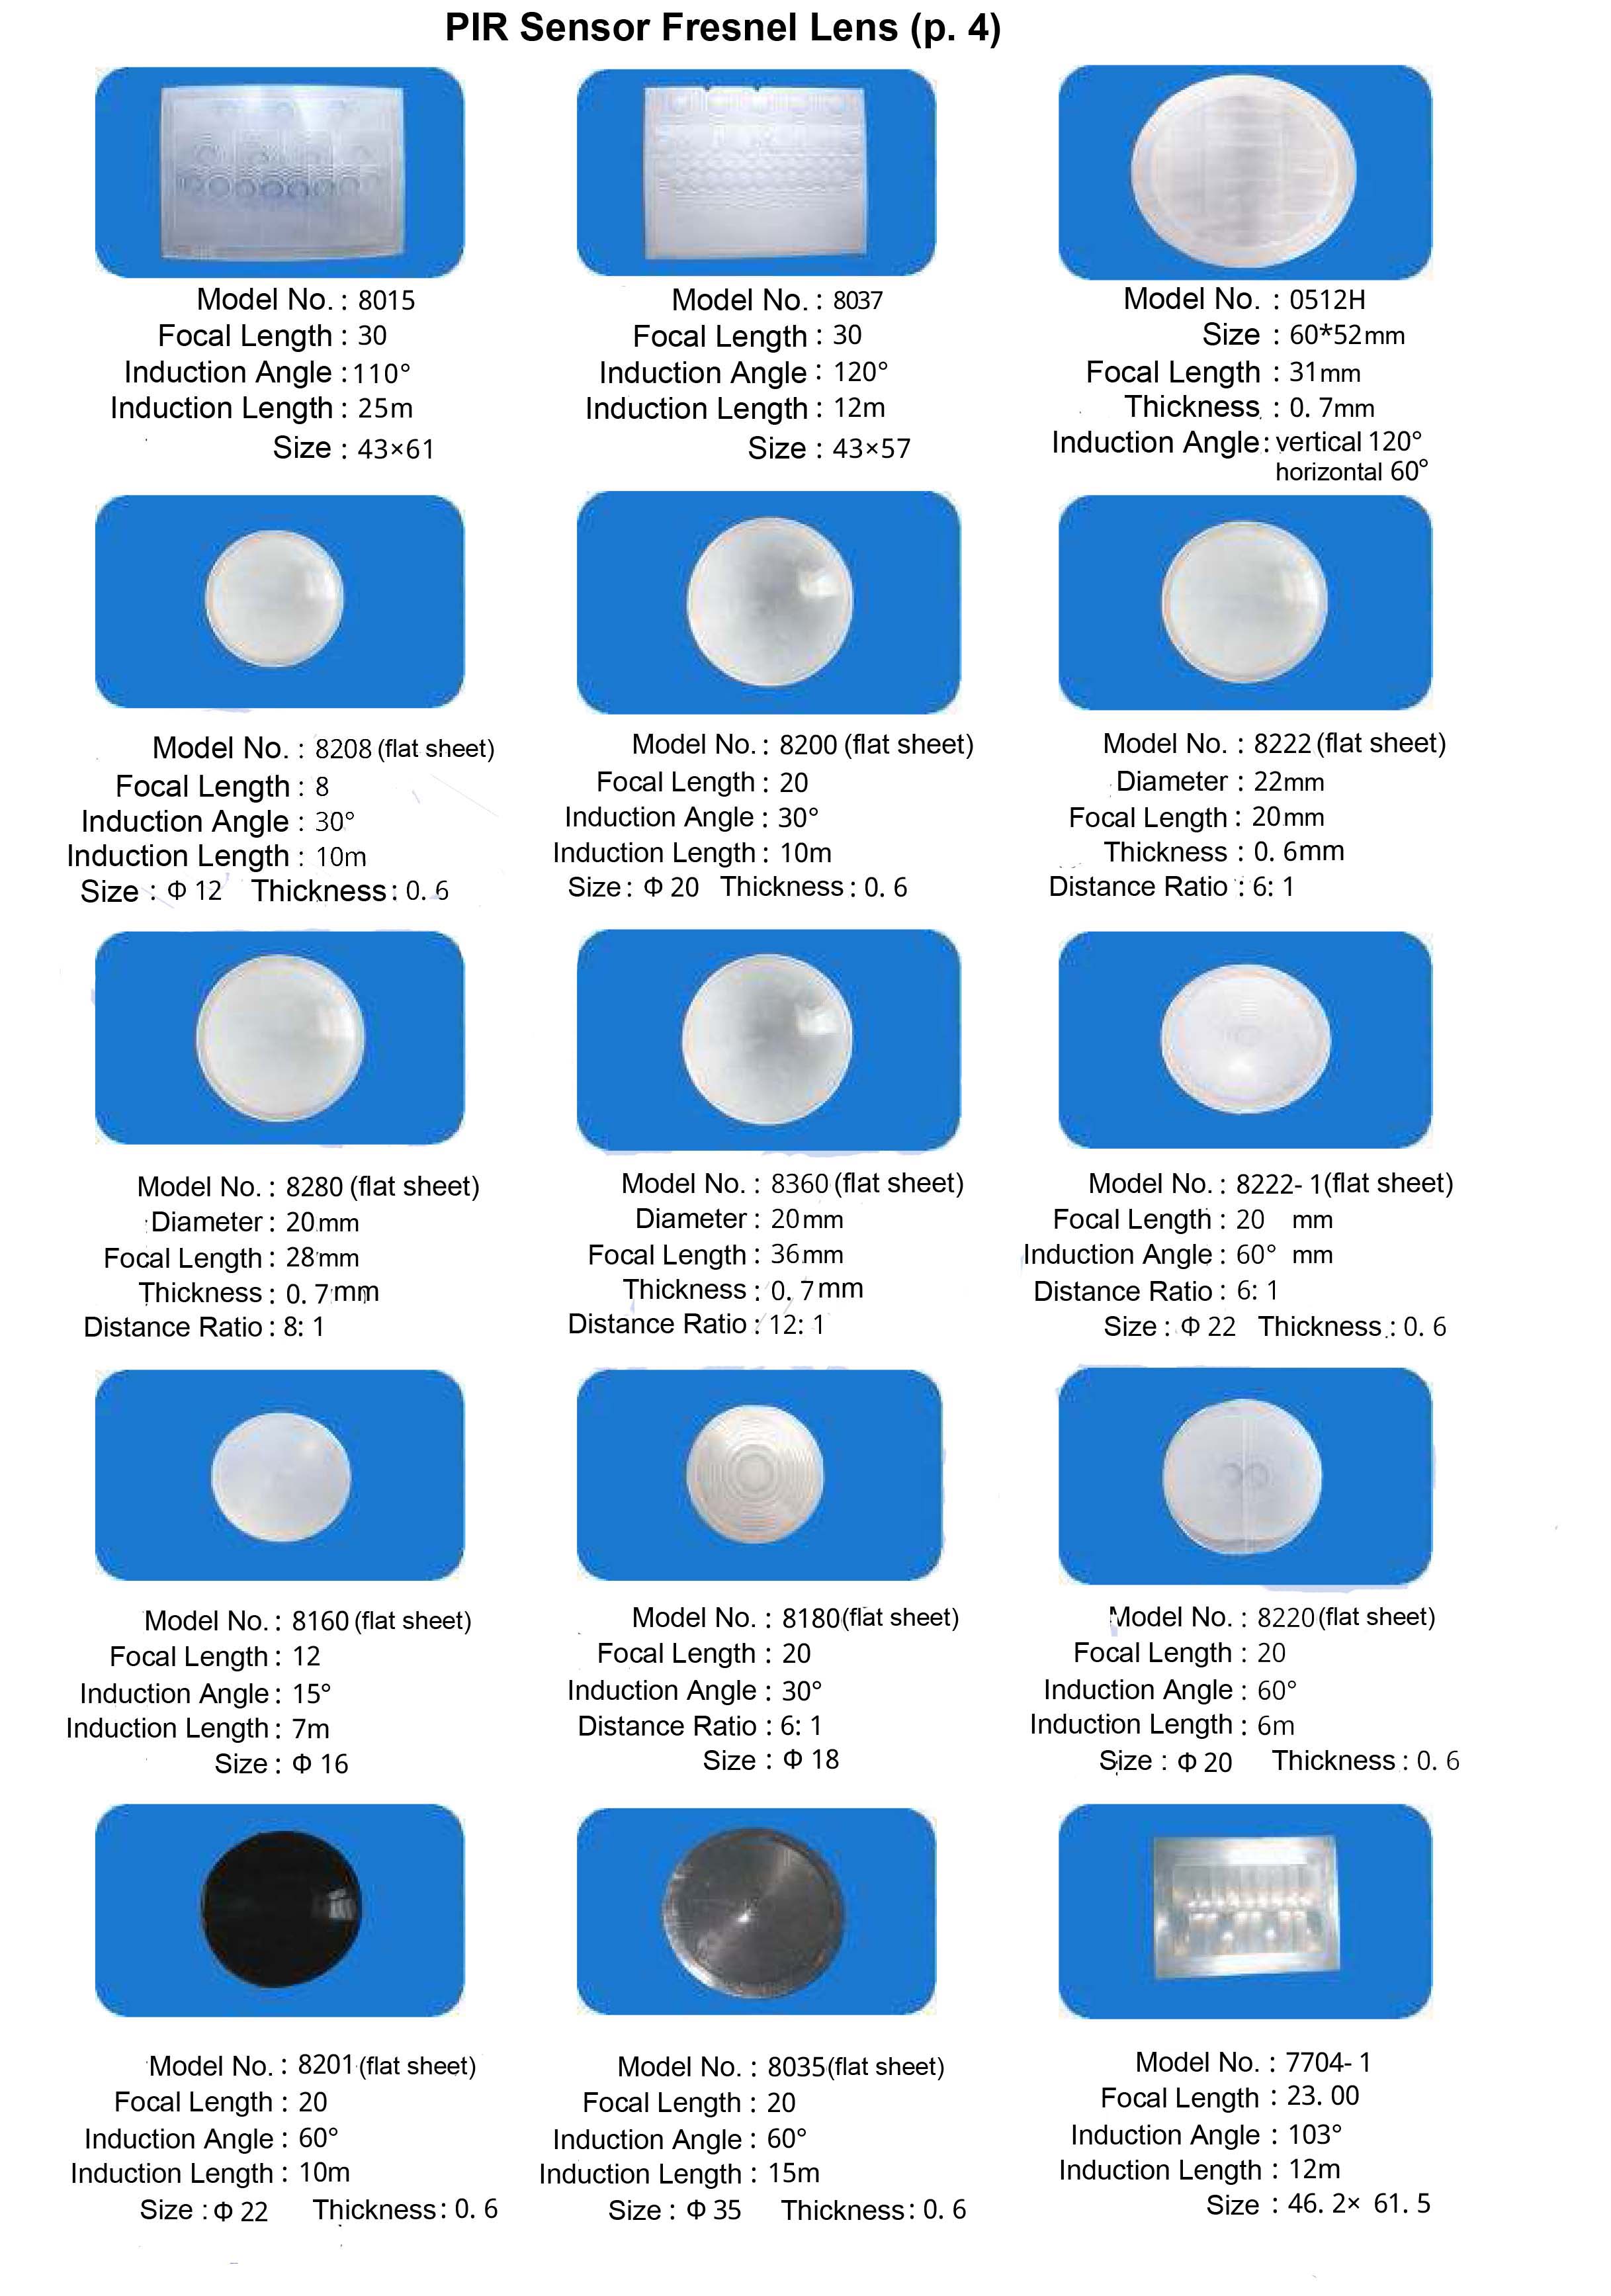 PIR Fresnel sensor lens catalogue page 4